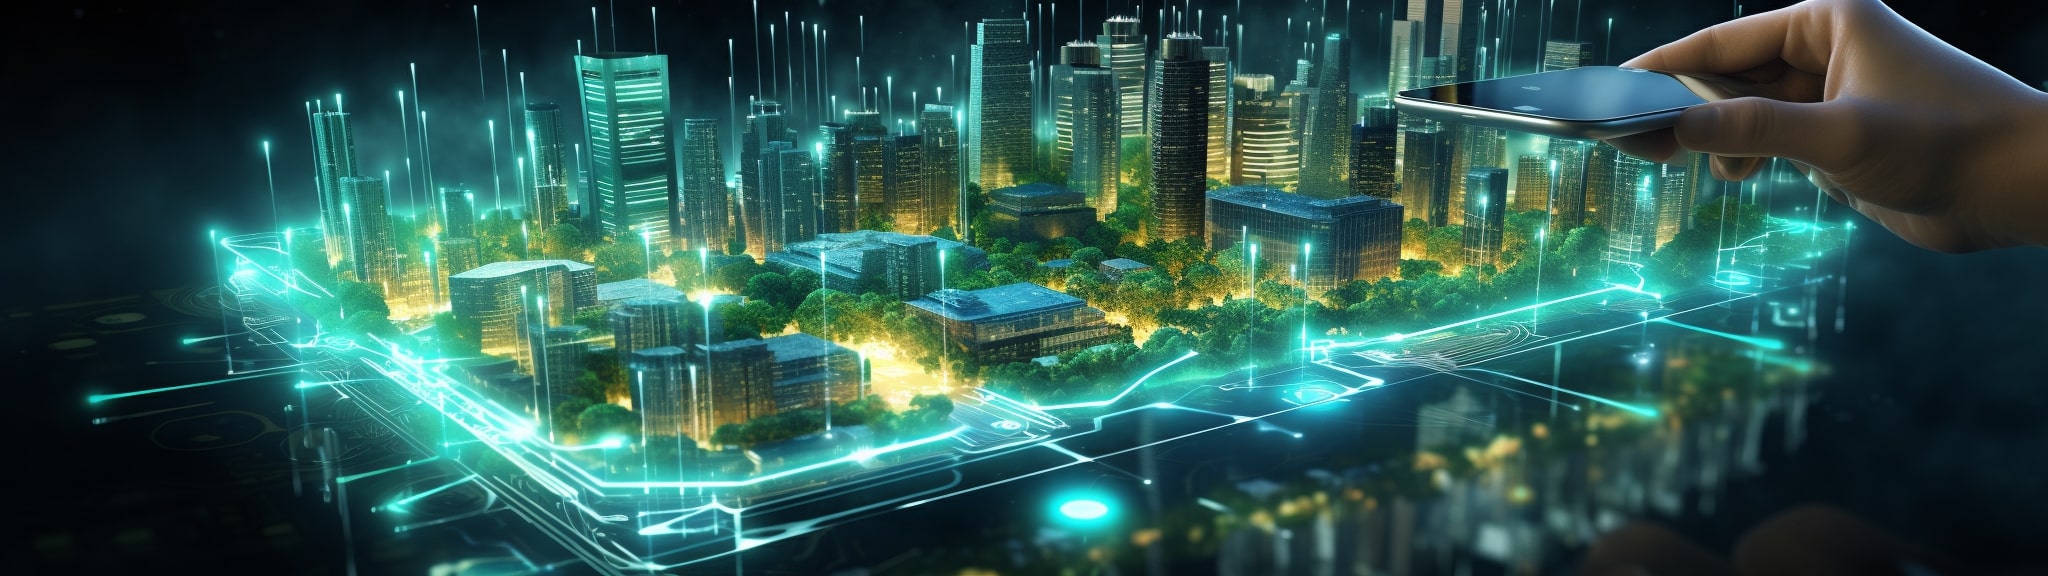 Rendu 3D de l'urbain grâce à la technologie numérique